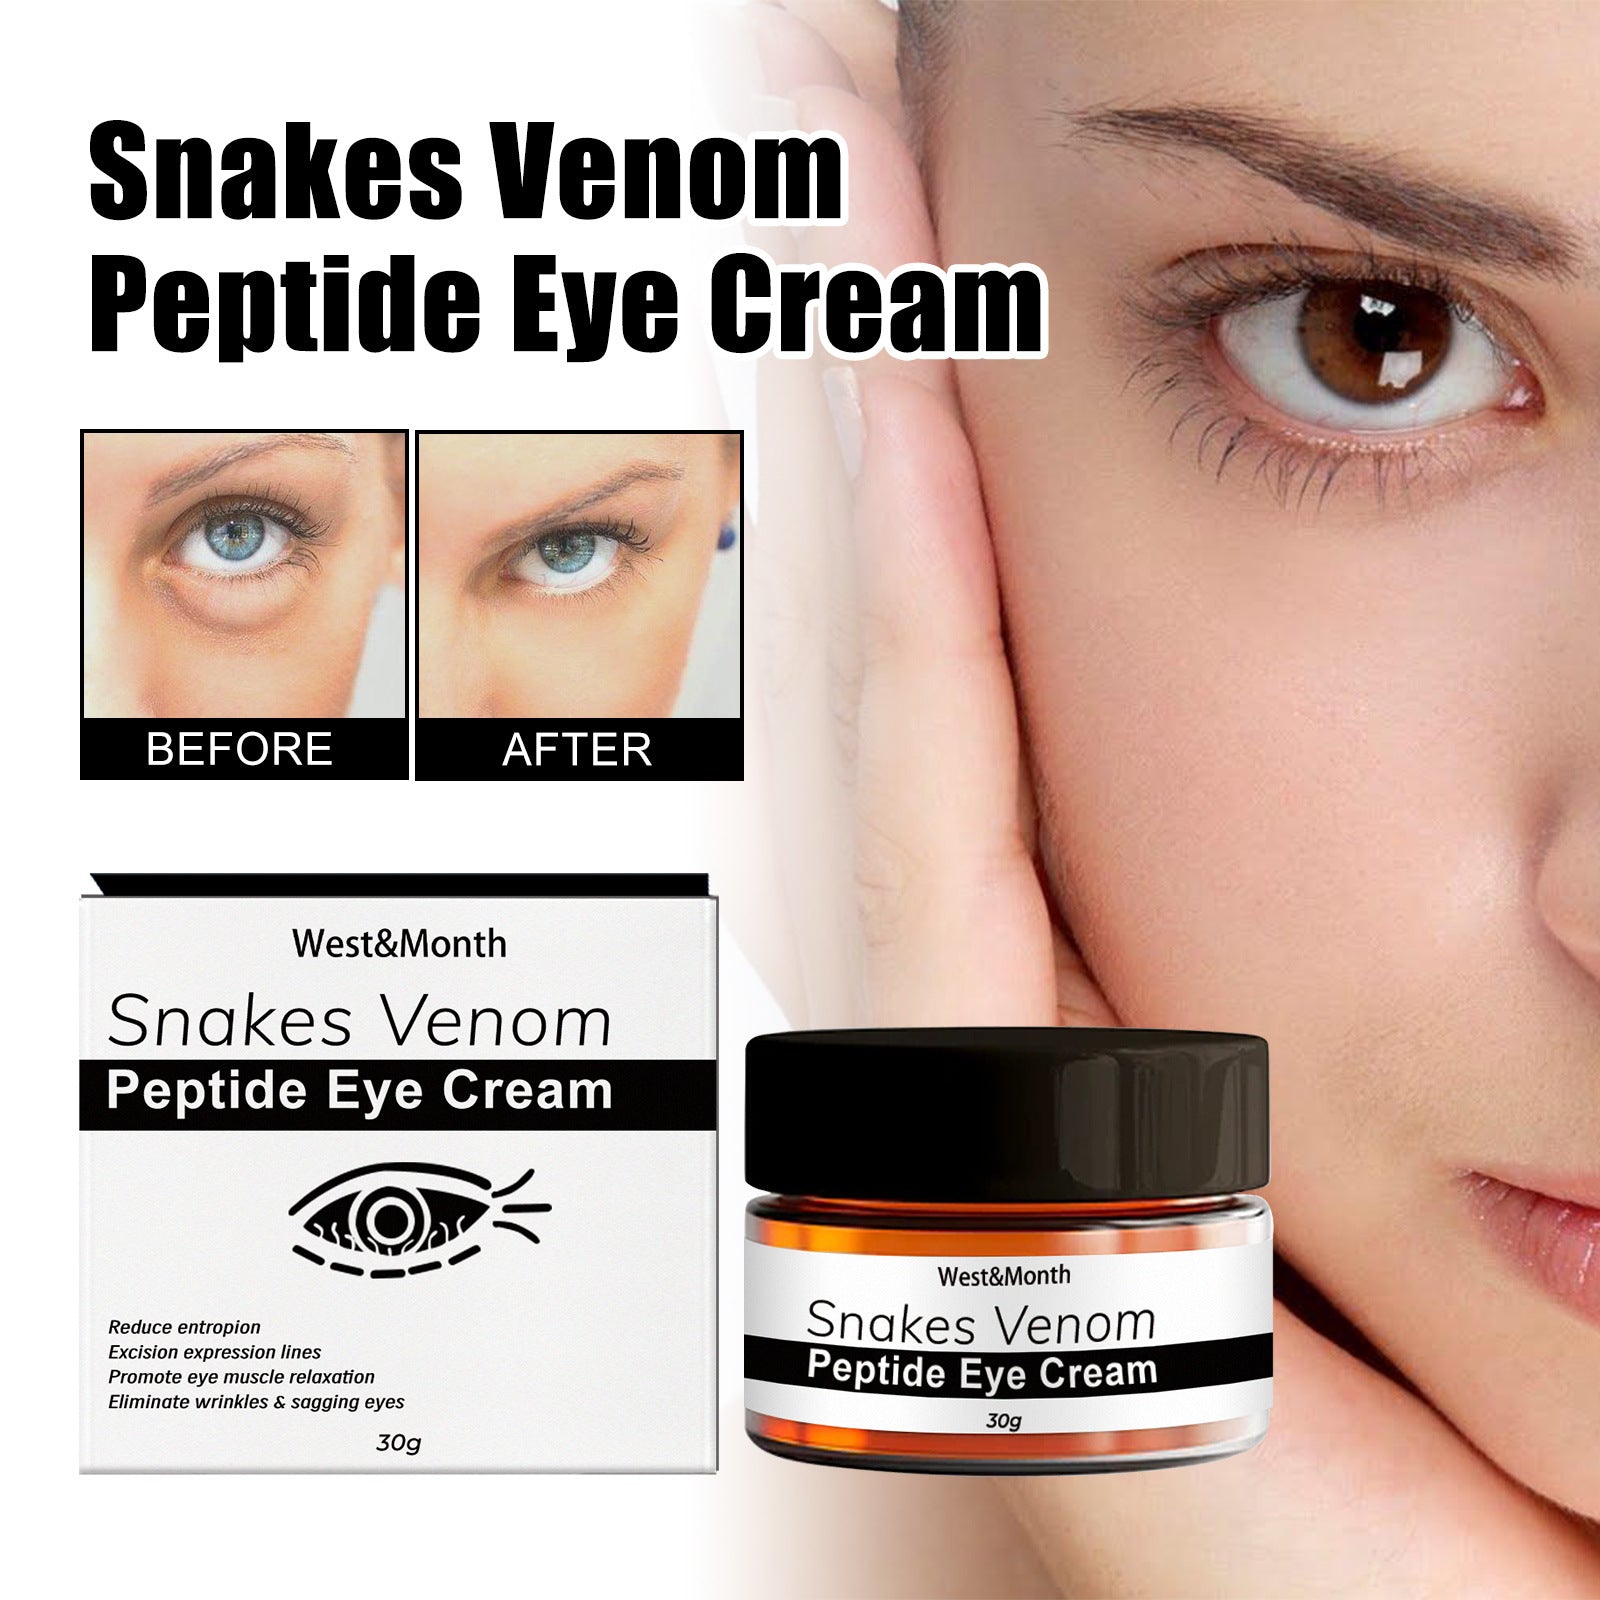 Crema Contorno de Ojos con Péptidos de Veneno de Serpiente: Elimina Bolsas y Ojeras - Tokio Beauty Skin